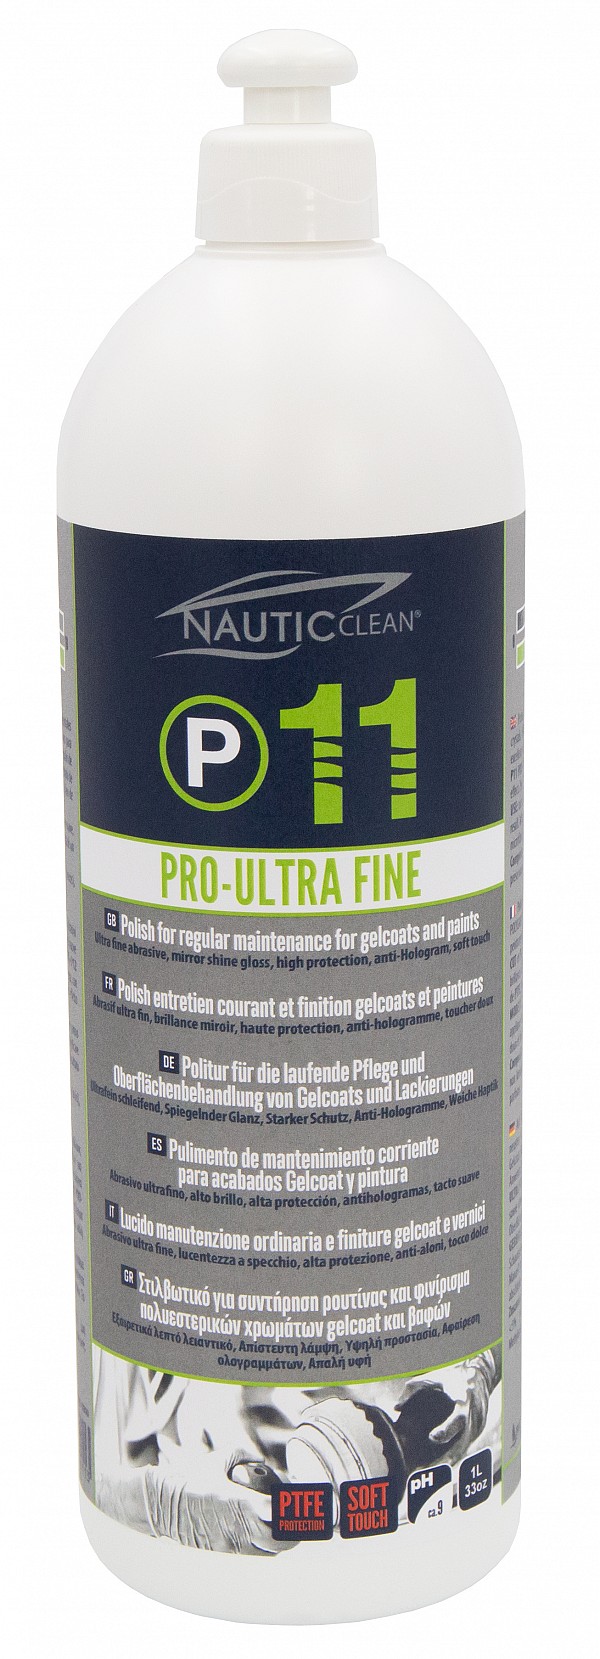 P11 Pro-Ultra Fine - Fina polirna pasta